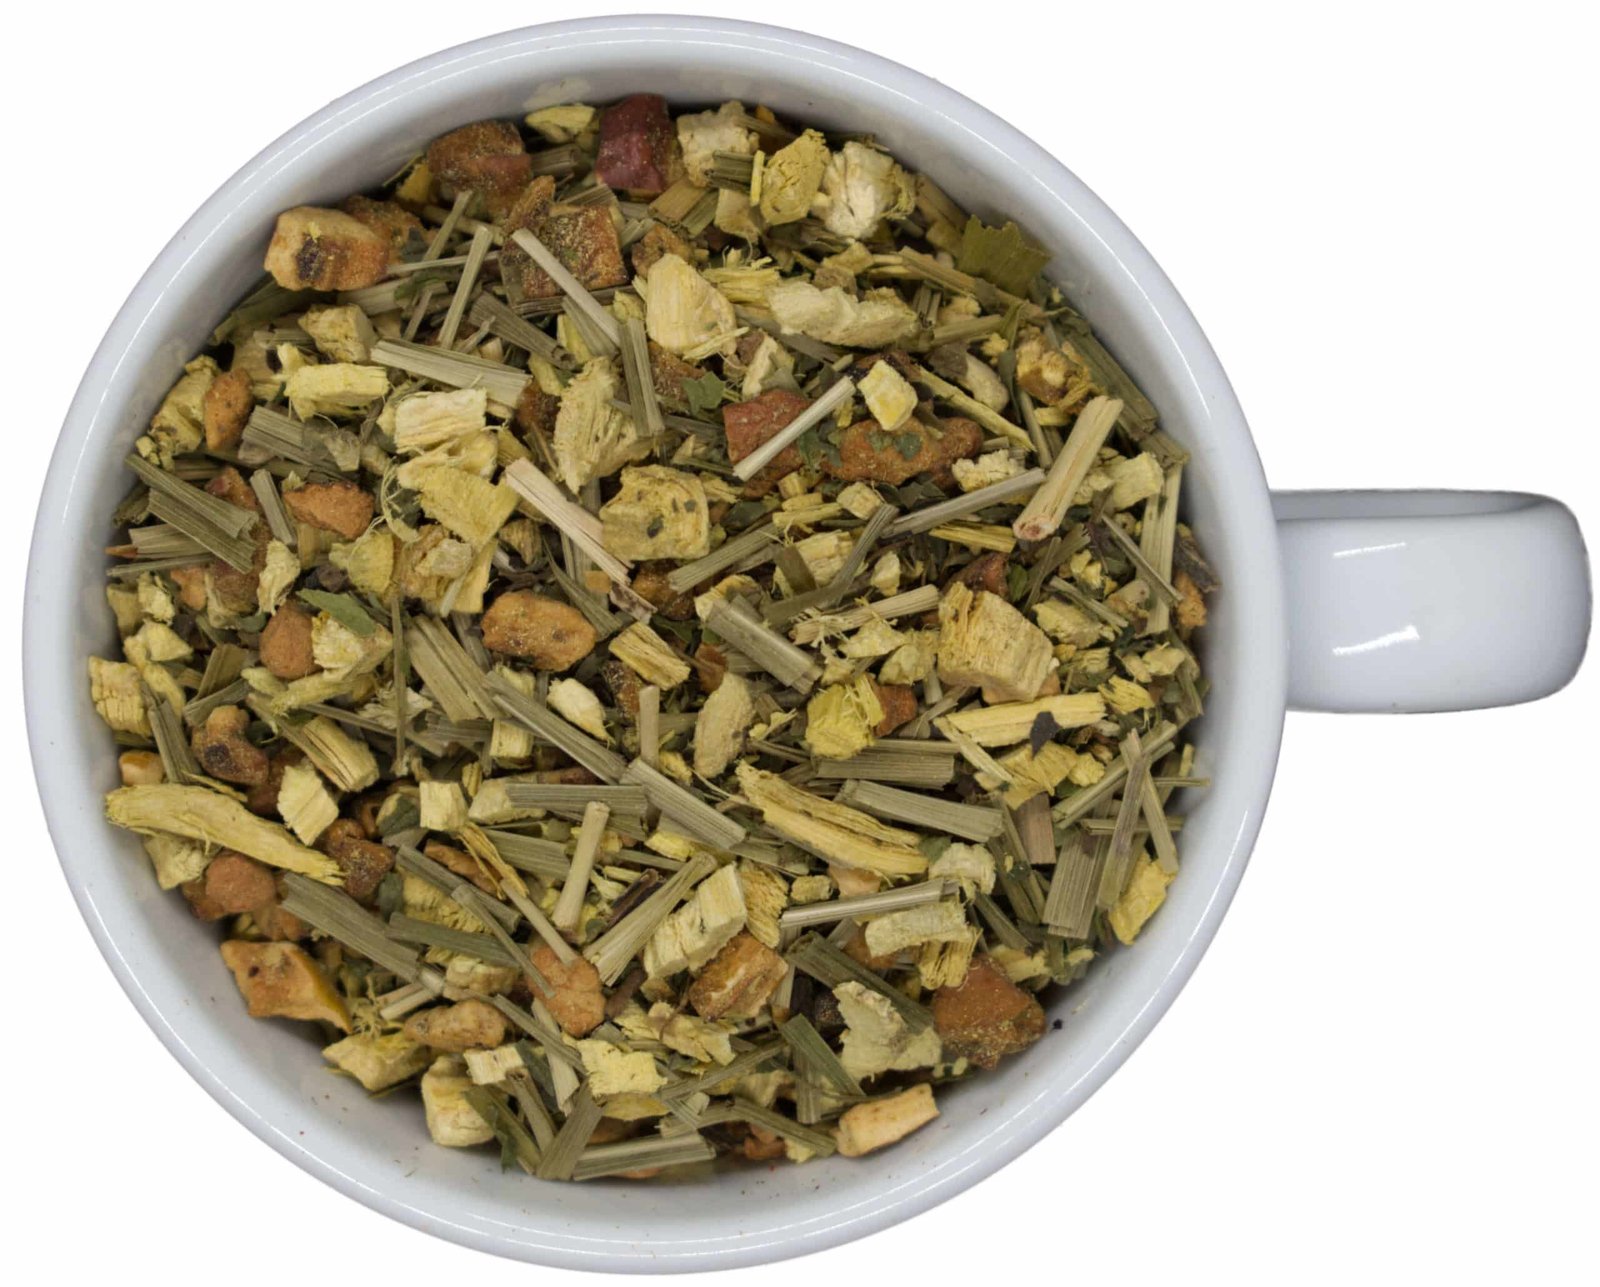 Öland – Herbal Tea Mint Taste